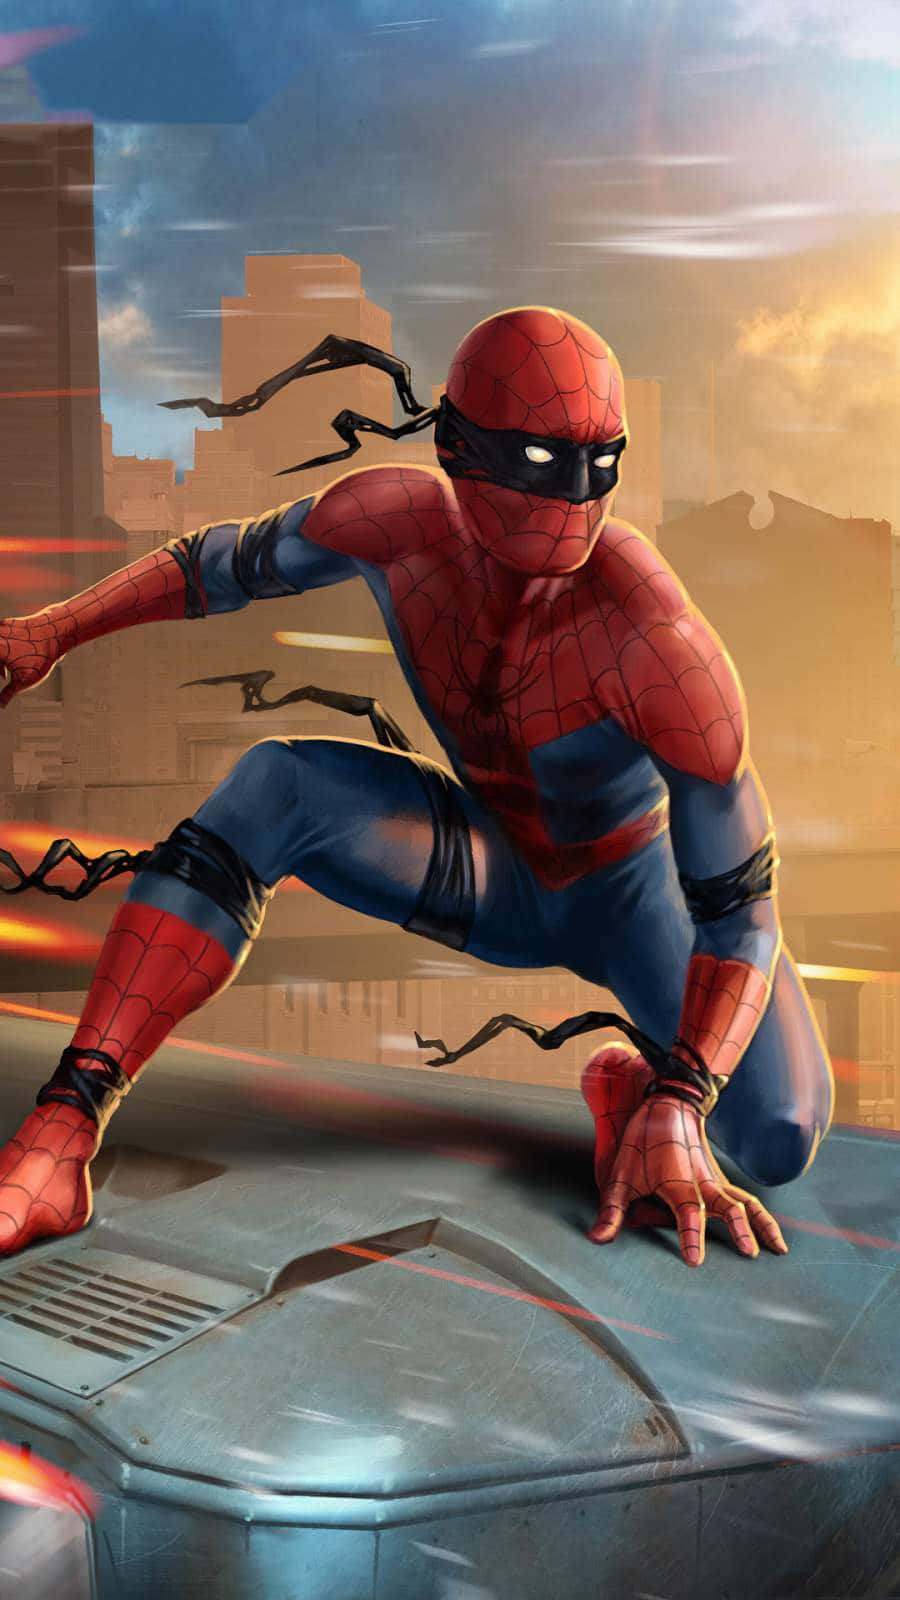 Spider Man - The Amazing Spider Man 2